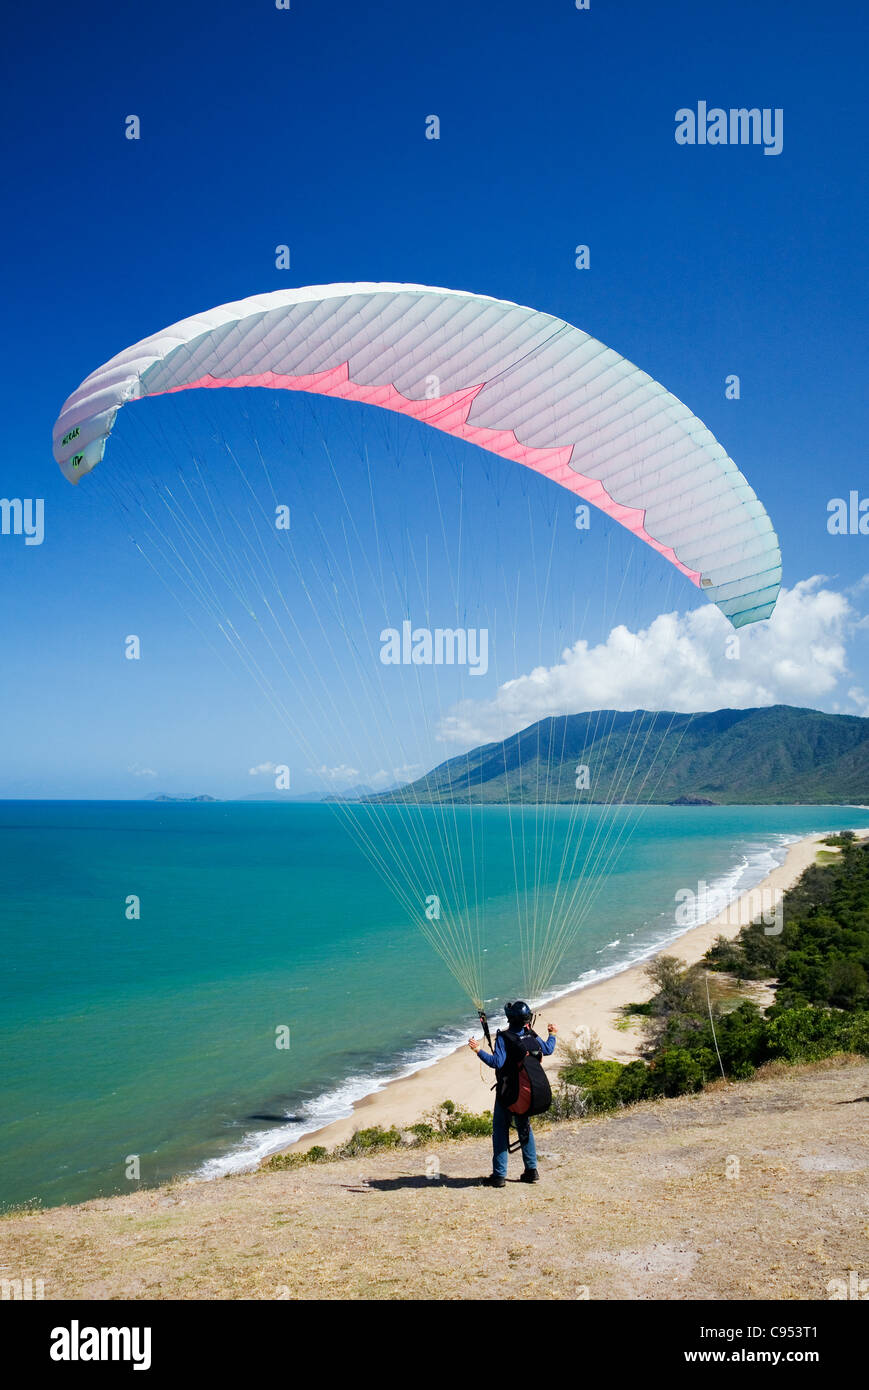 Un parapente se lanza ahora de Rex Mirador, con vistas a la playa Wangetti, cerca de Cairns, Queensland, Australia Foto de stock